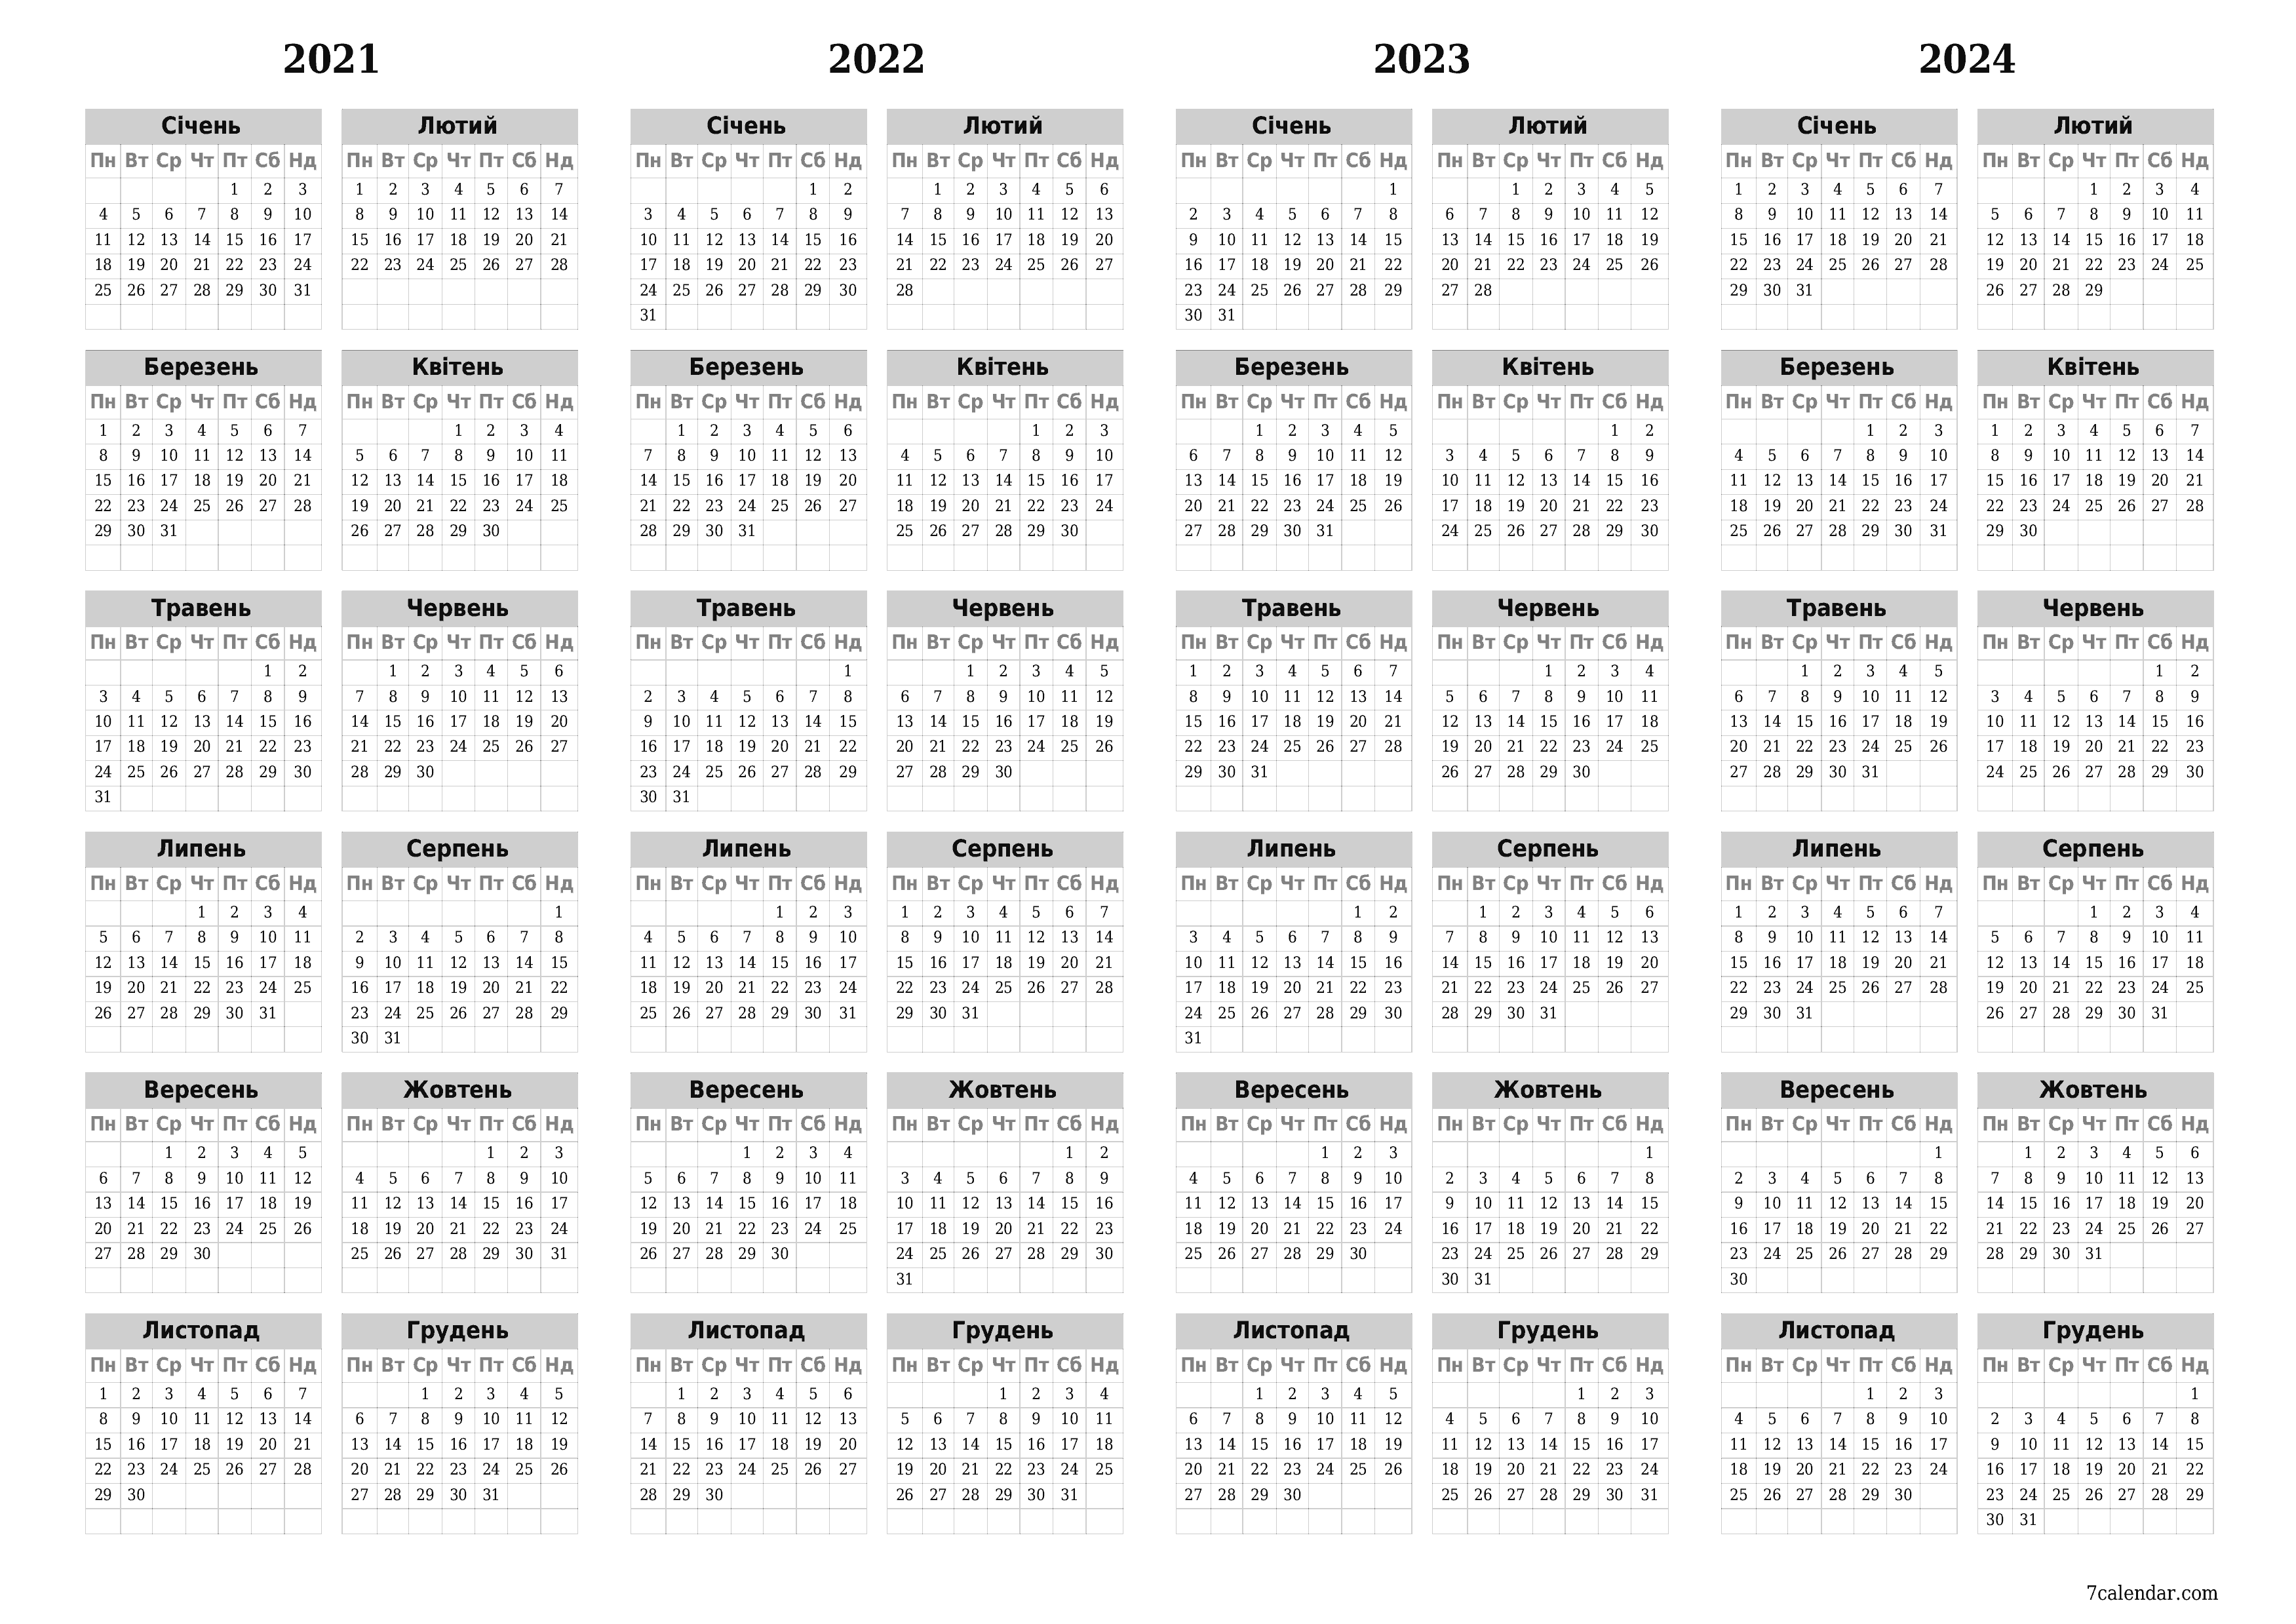  для друку настінний шаблон я безкоштовний горизонтальний Щорічний календар Грудень (Гру) 2021